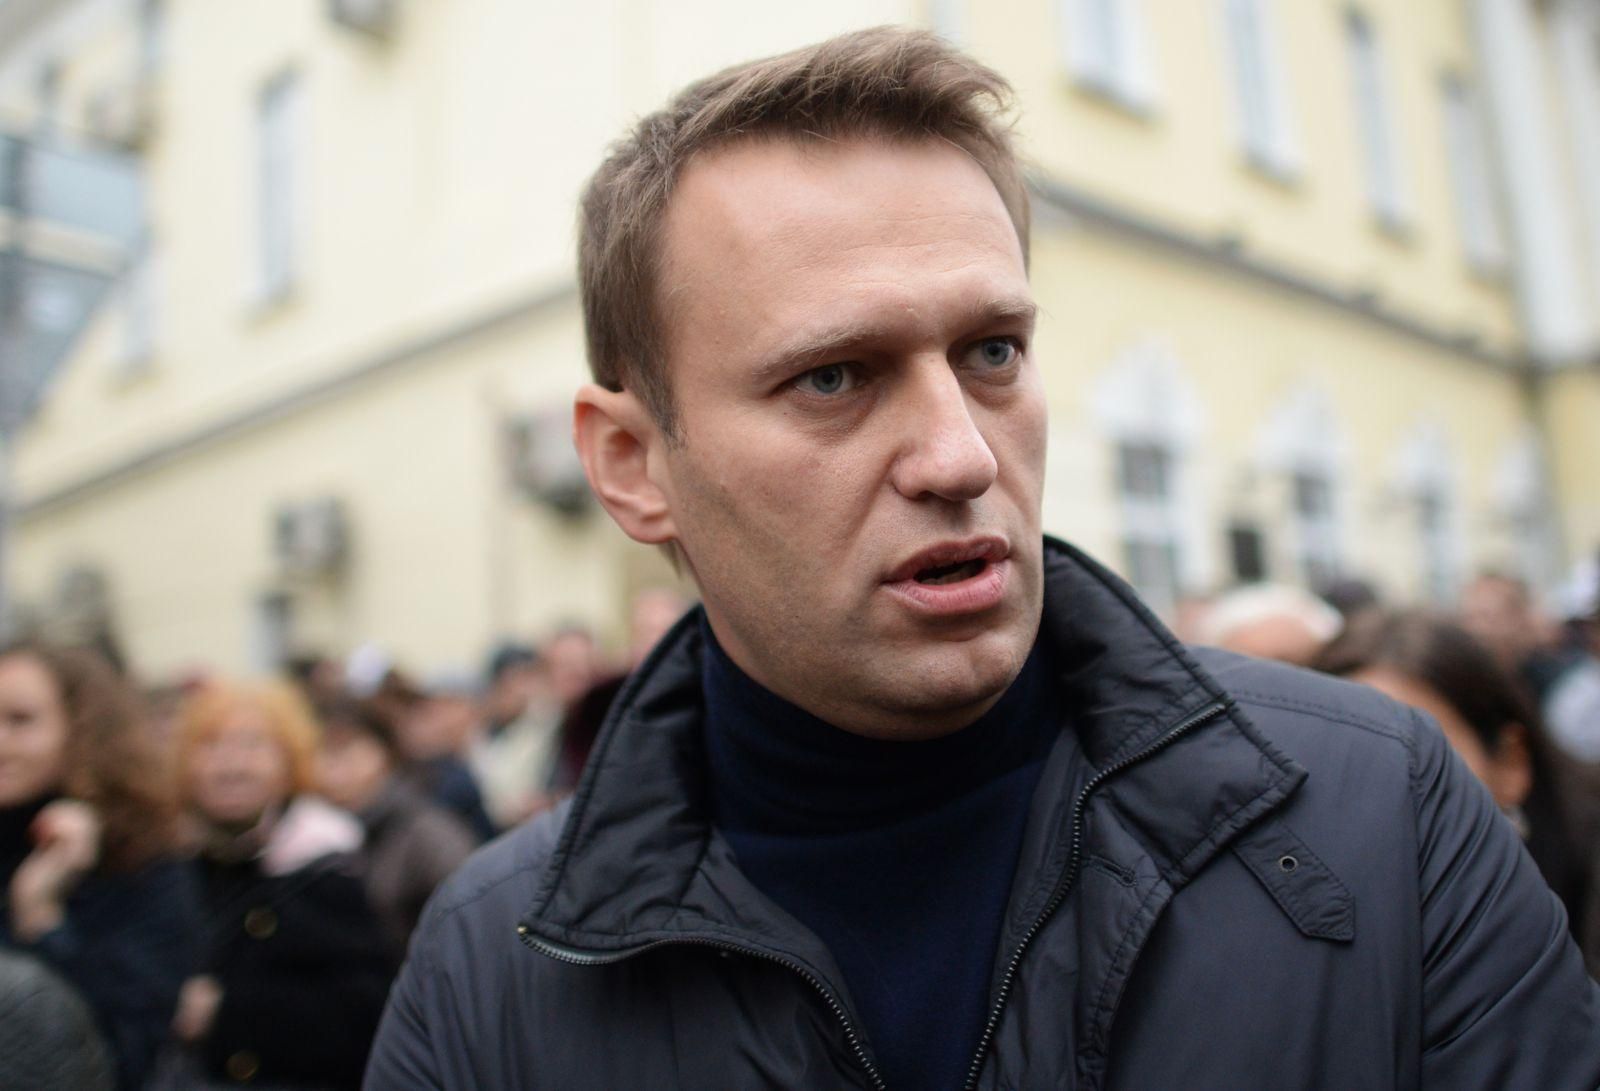 Навального выписали из больницы и вернули обратно в камеру: врачи категорически против